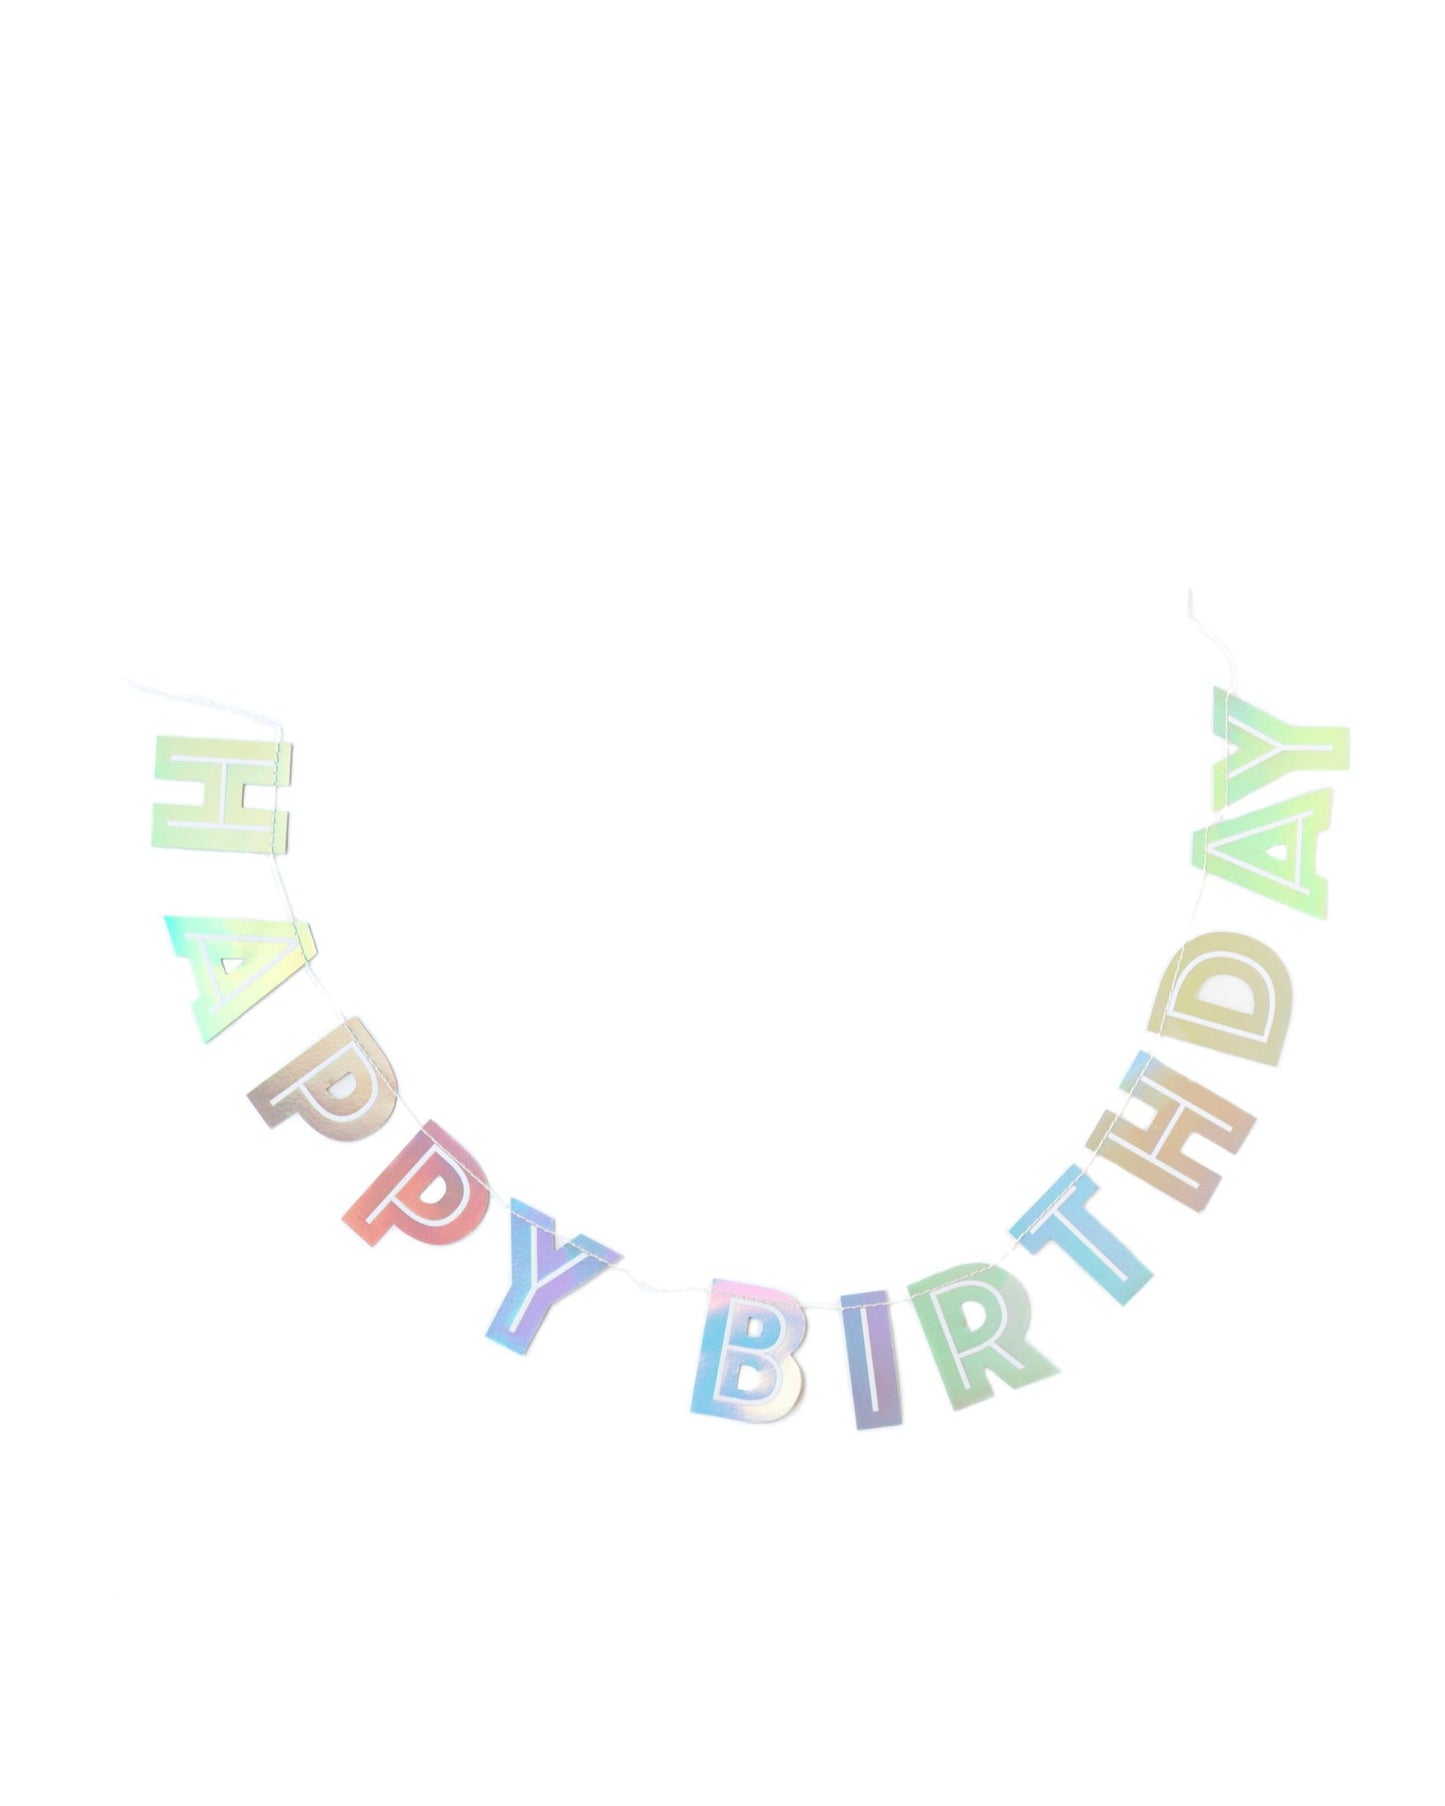 Guirlanda Happy Birthday prateado holográfico